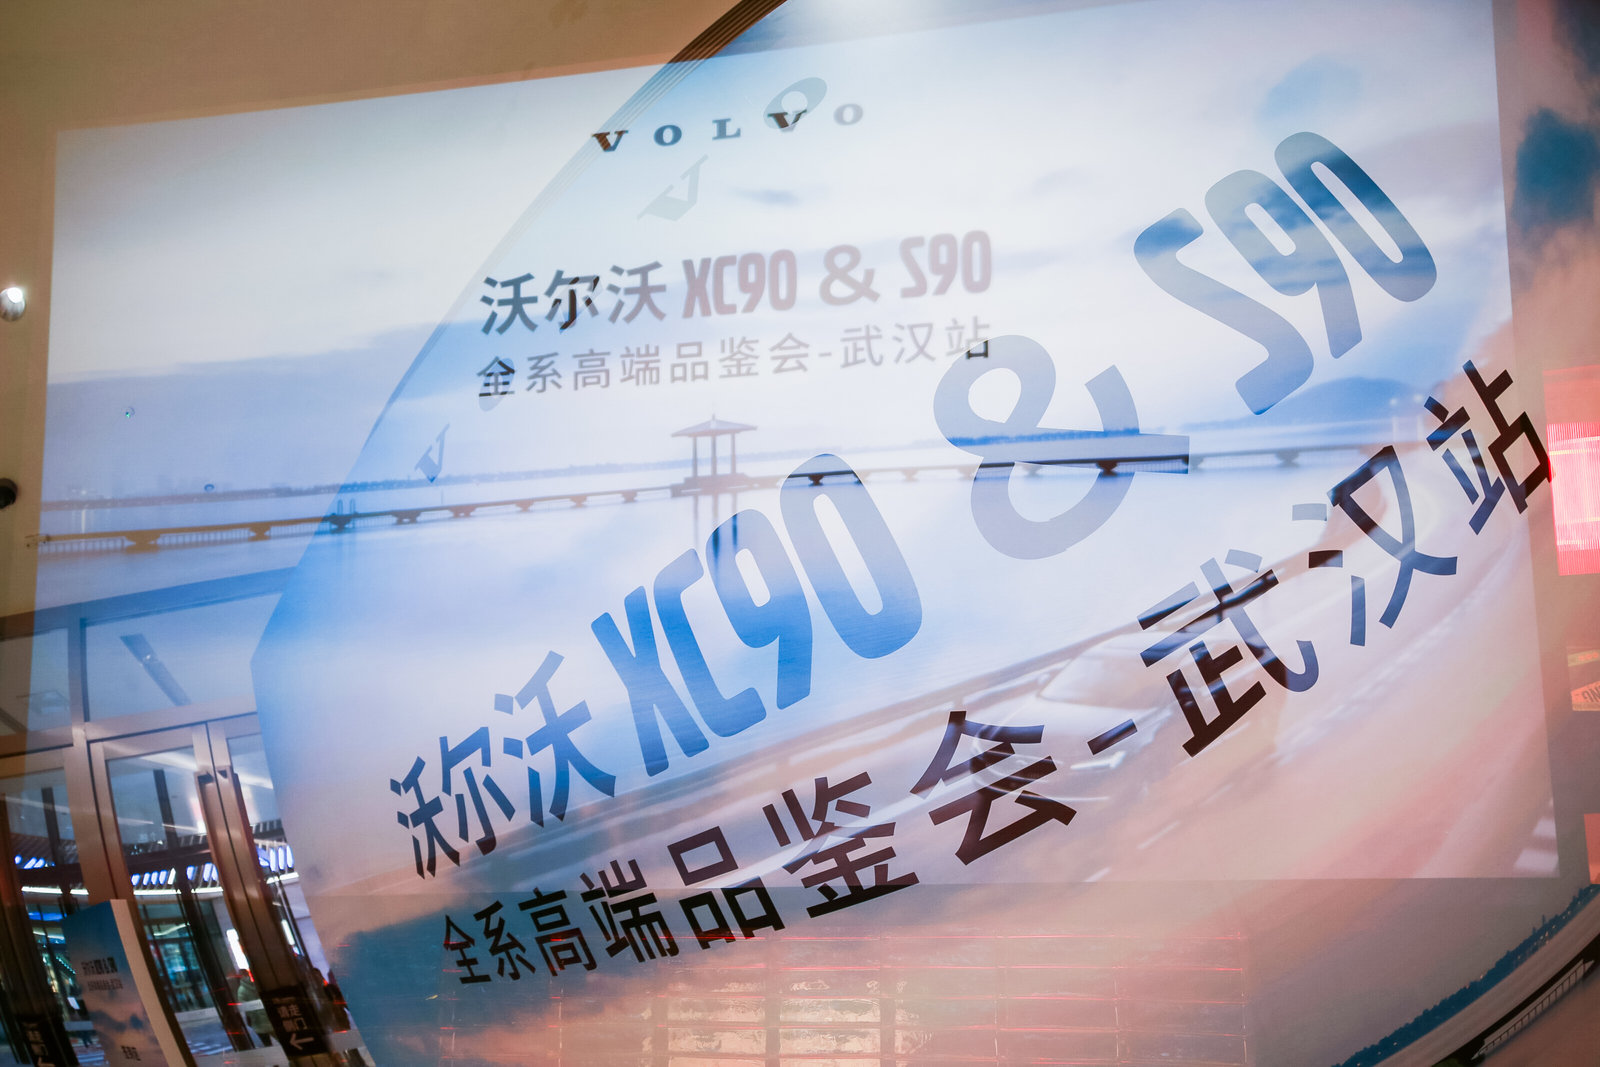 “纵览格局，与沃同行” 沃尔沃XC90&S90全系高端品鉴活动-武汉站